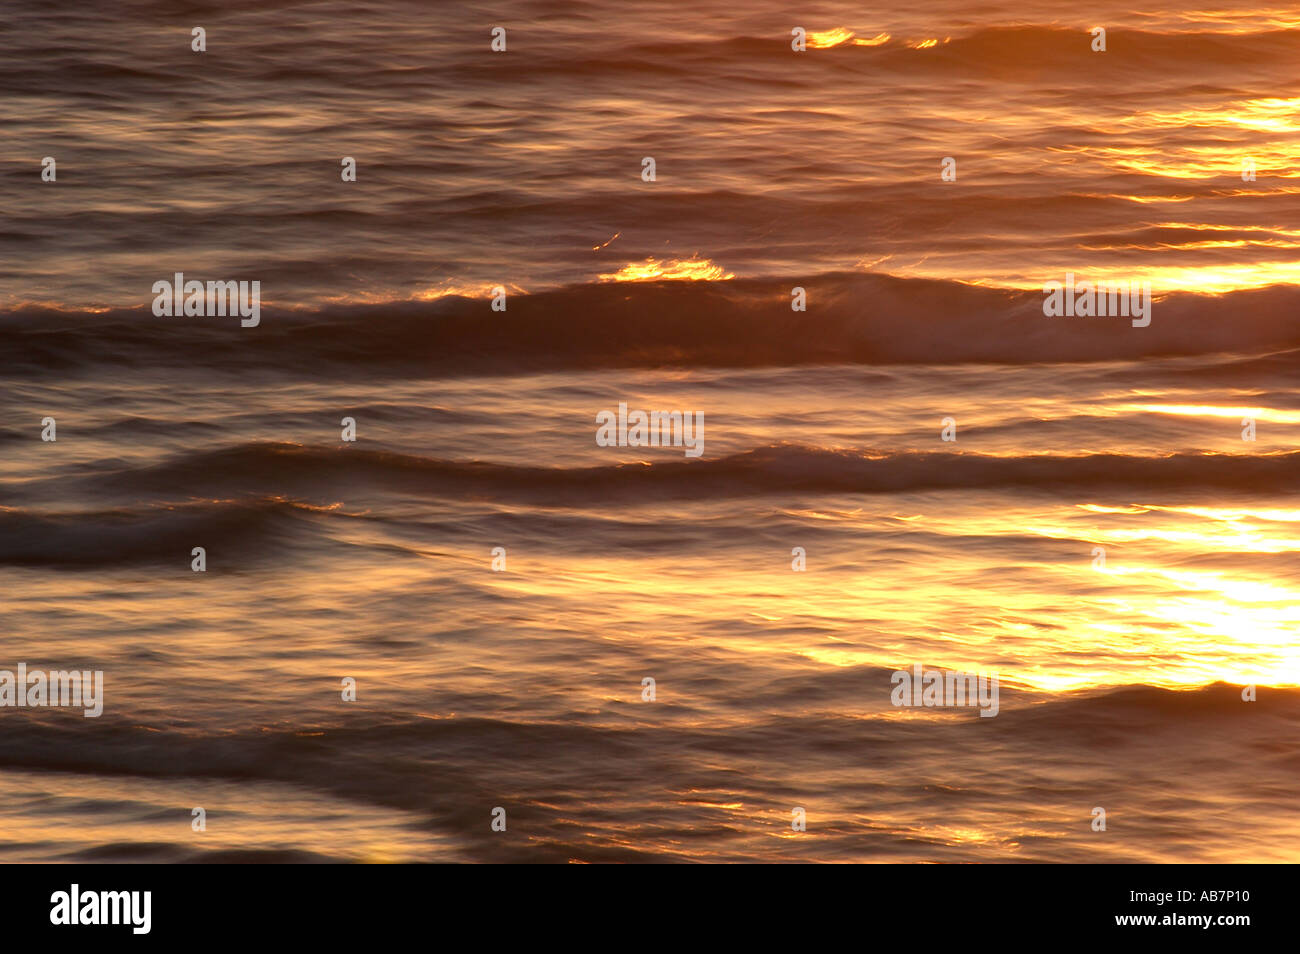 ocean sunset Stock Photo